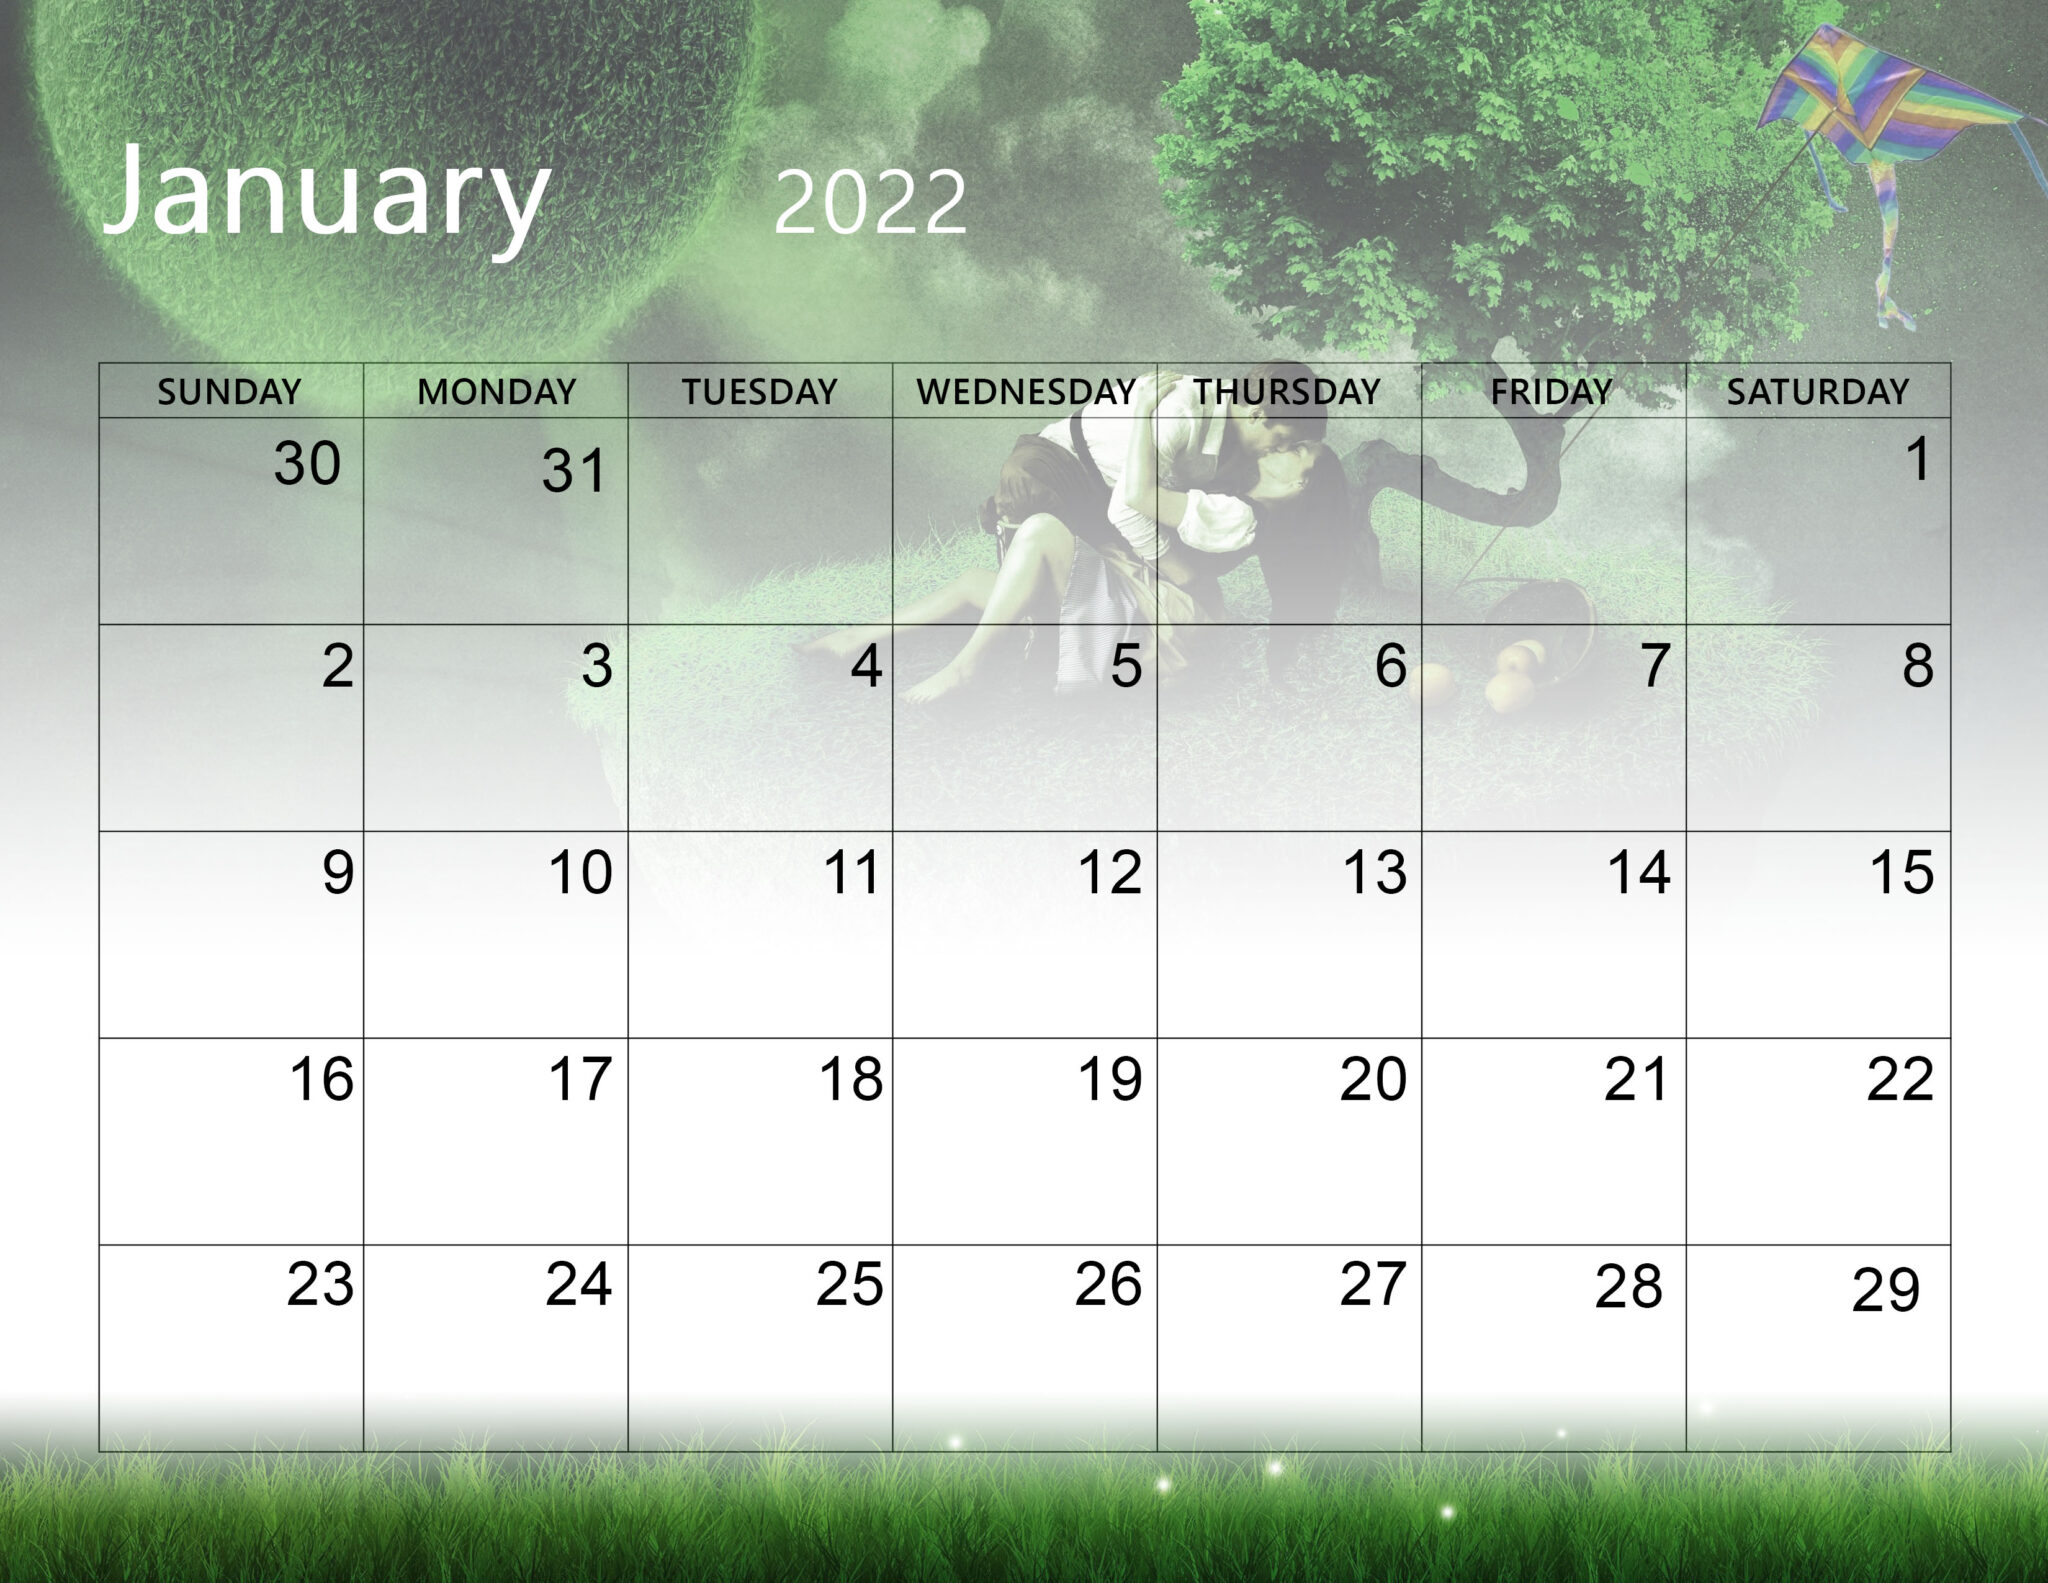 Catch January 2022 Calendar Dates